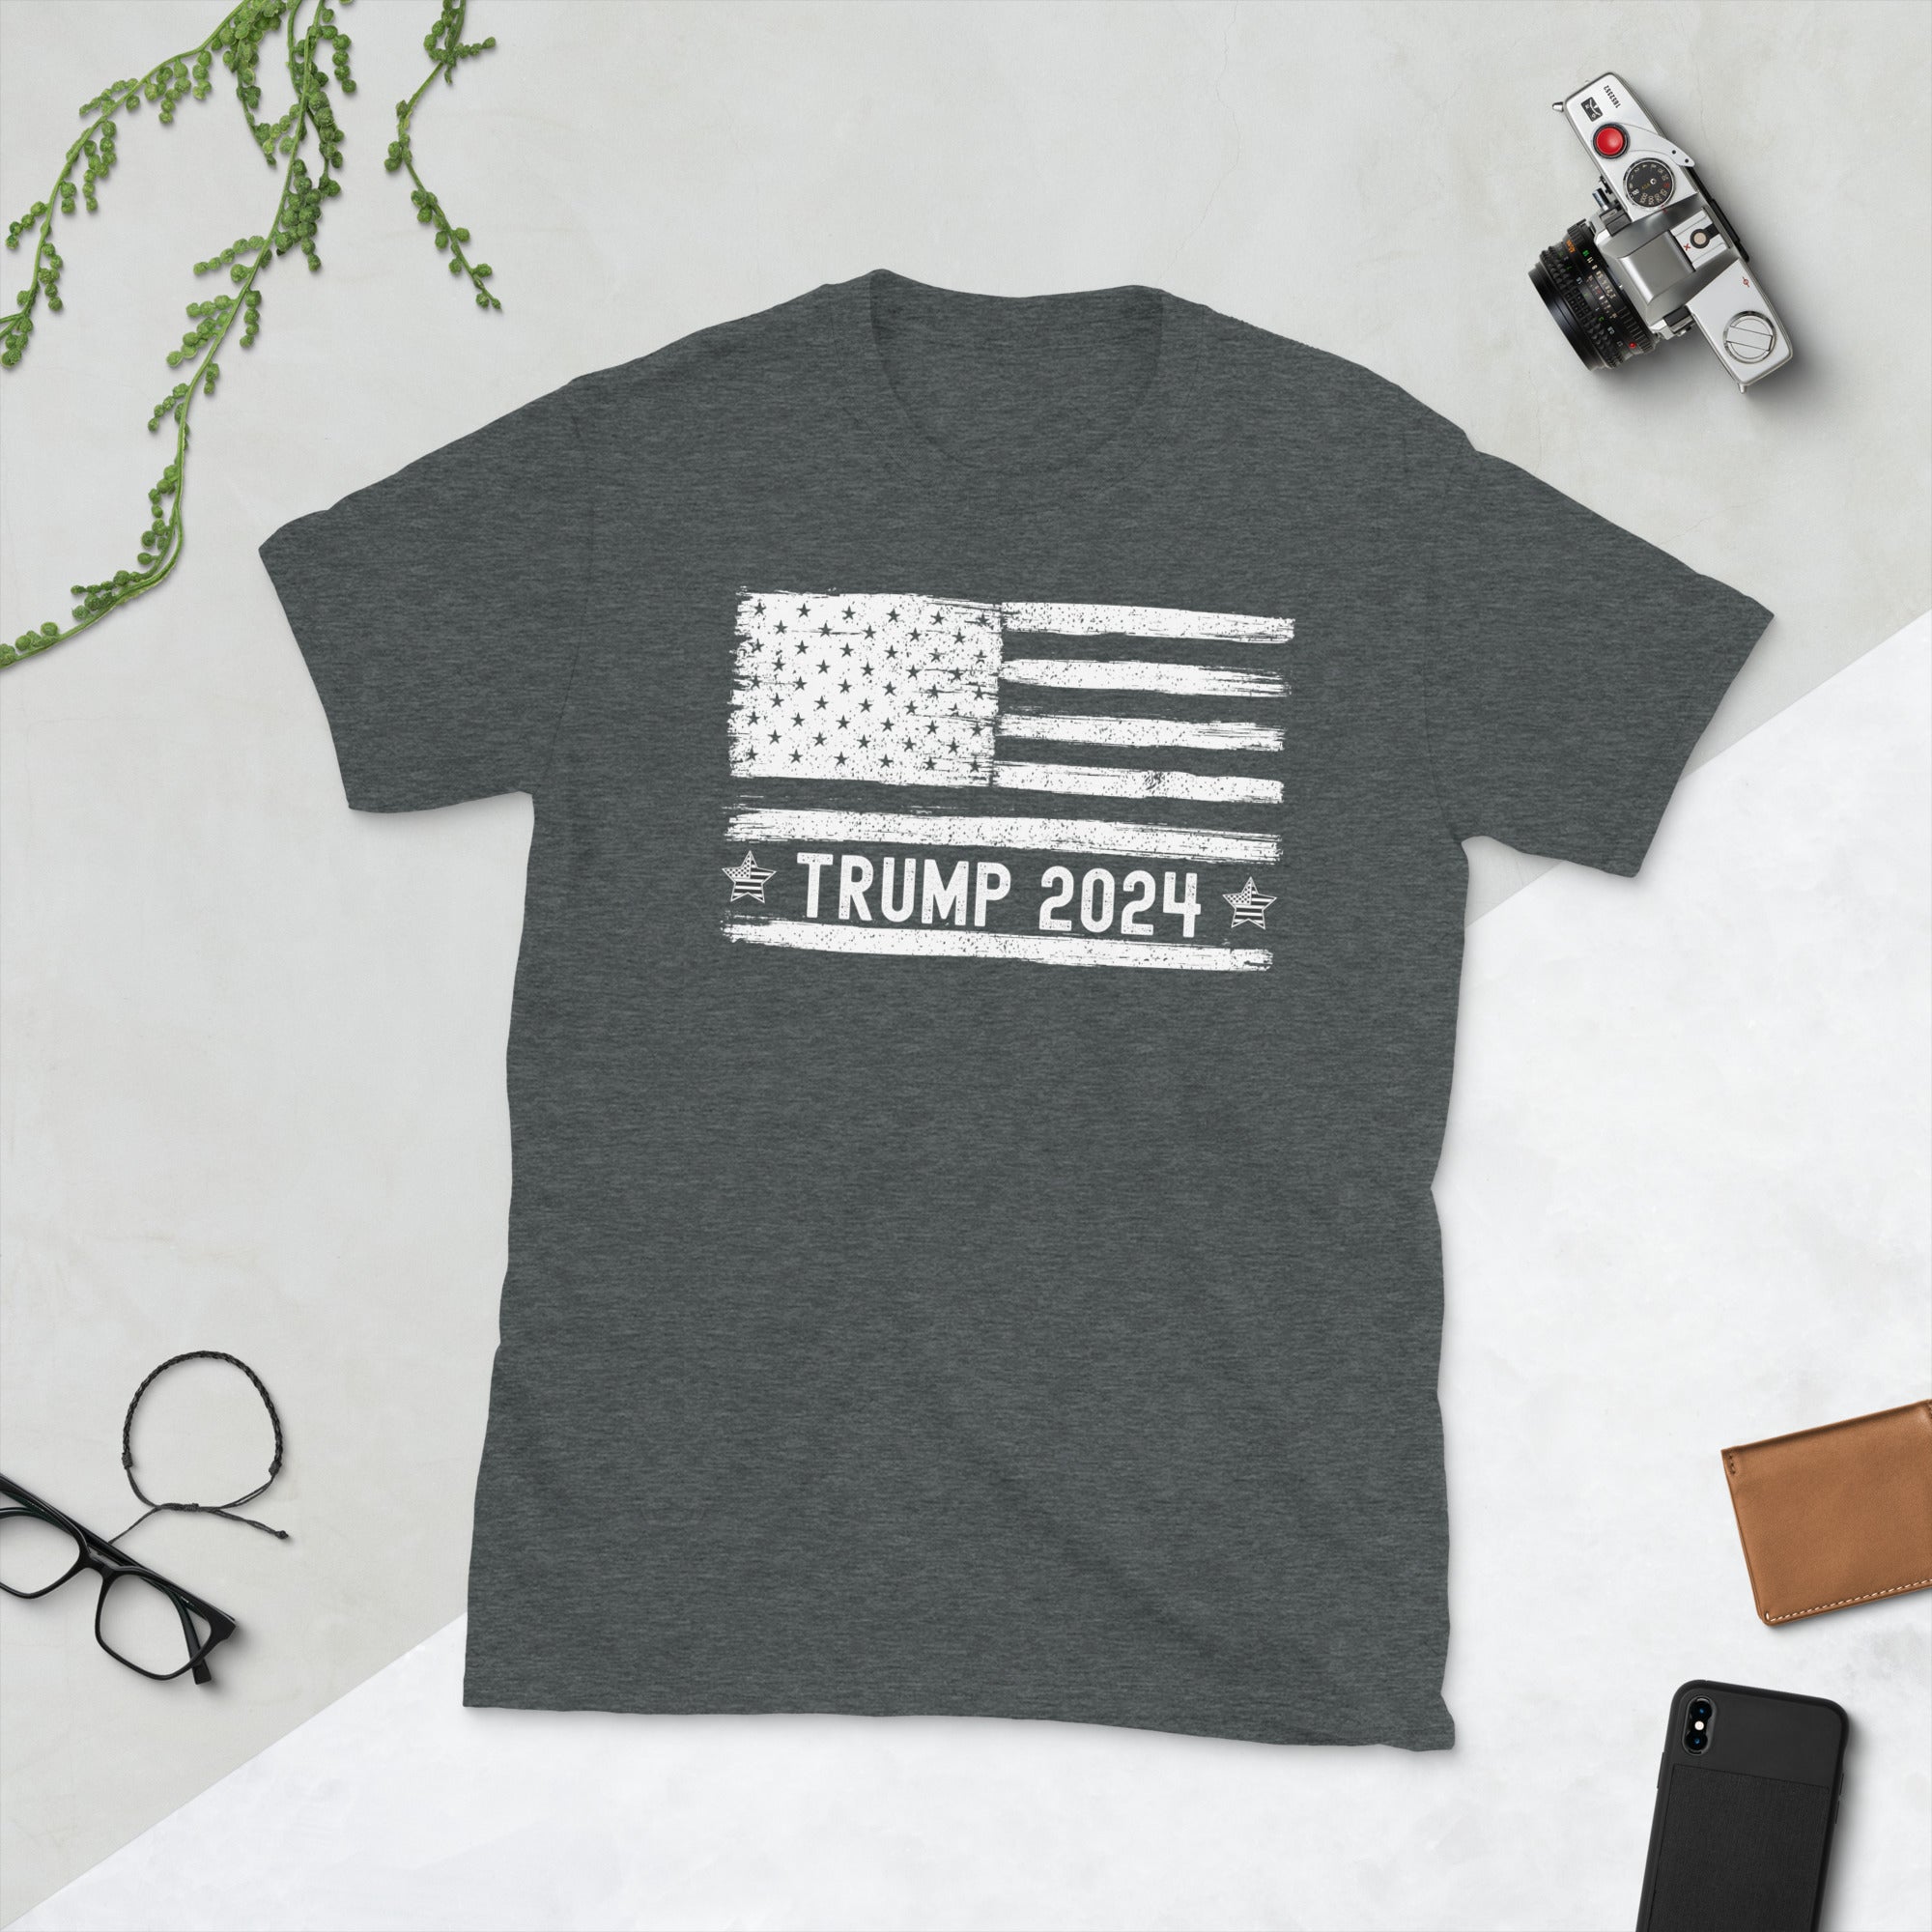 Camisa con la bandera de Trump, camiseta de las elecciones presidenciales de EE. UU. 2024, camisa de Donald Trump, camiseta con la bandera de EE. UU., regalo republicano, camiseta vintage de Trump 2024